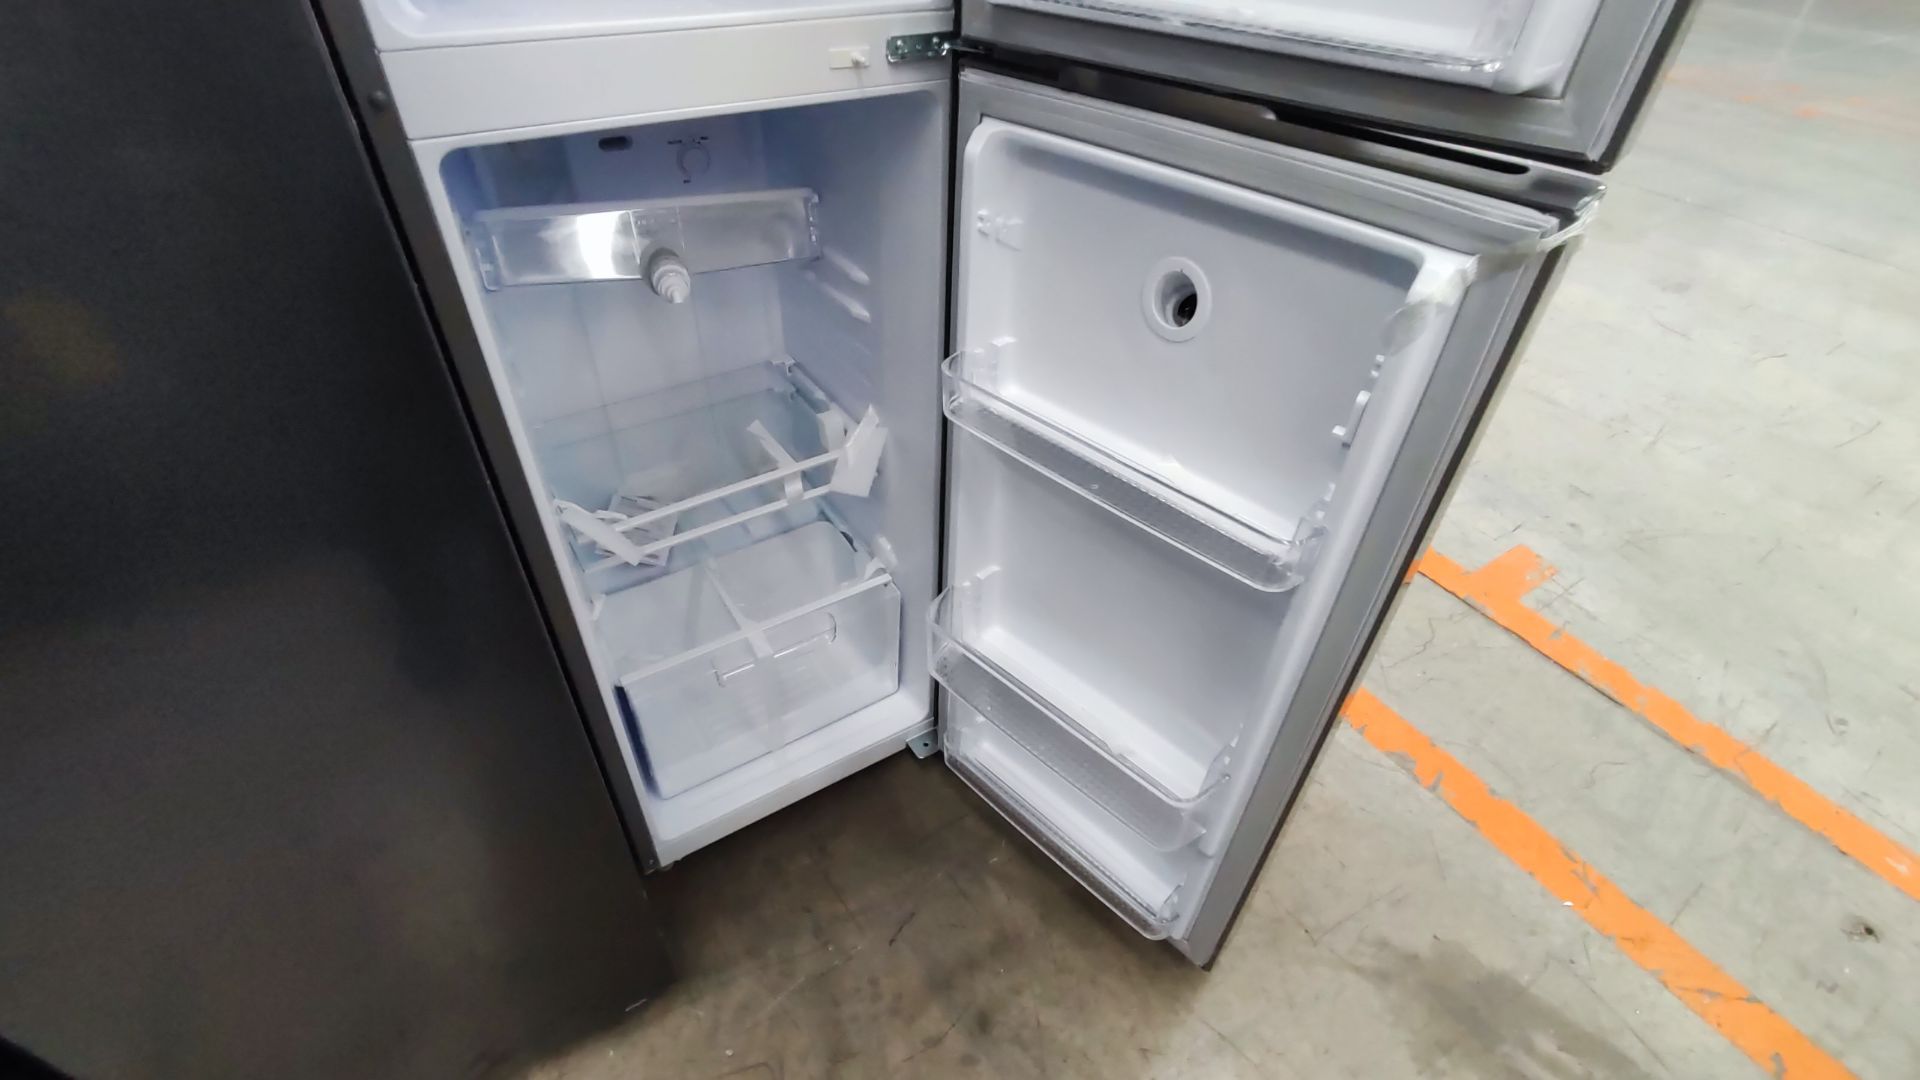 1 Refrigerador Marca Winia, Modelo DFR25210GMDX, Serie MR225N07610604, Color Gris Detalles Estético - Image 10 of 11